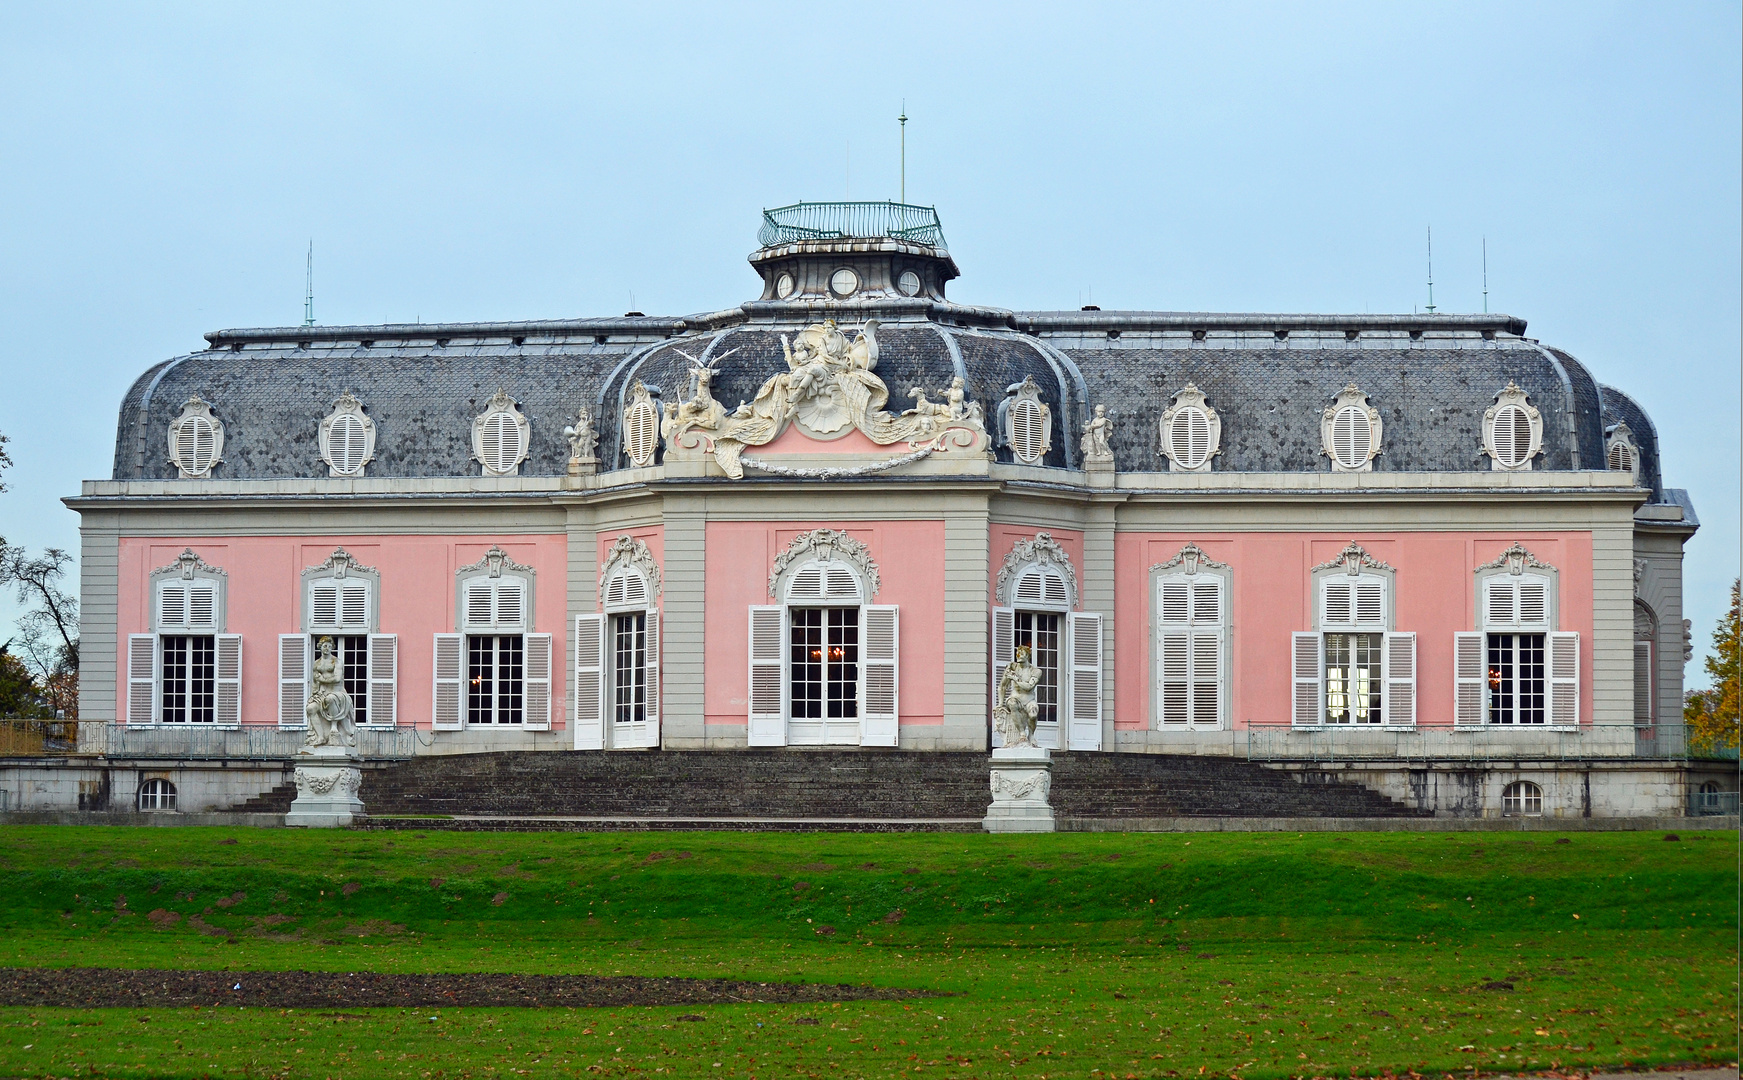 "Schloss Benrath"